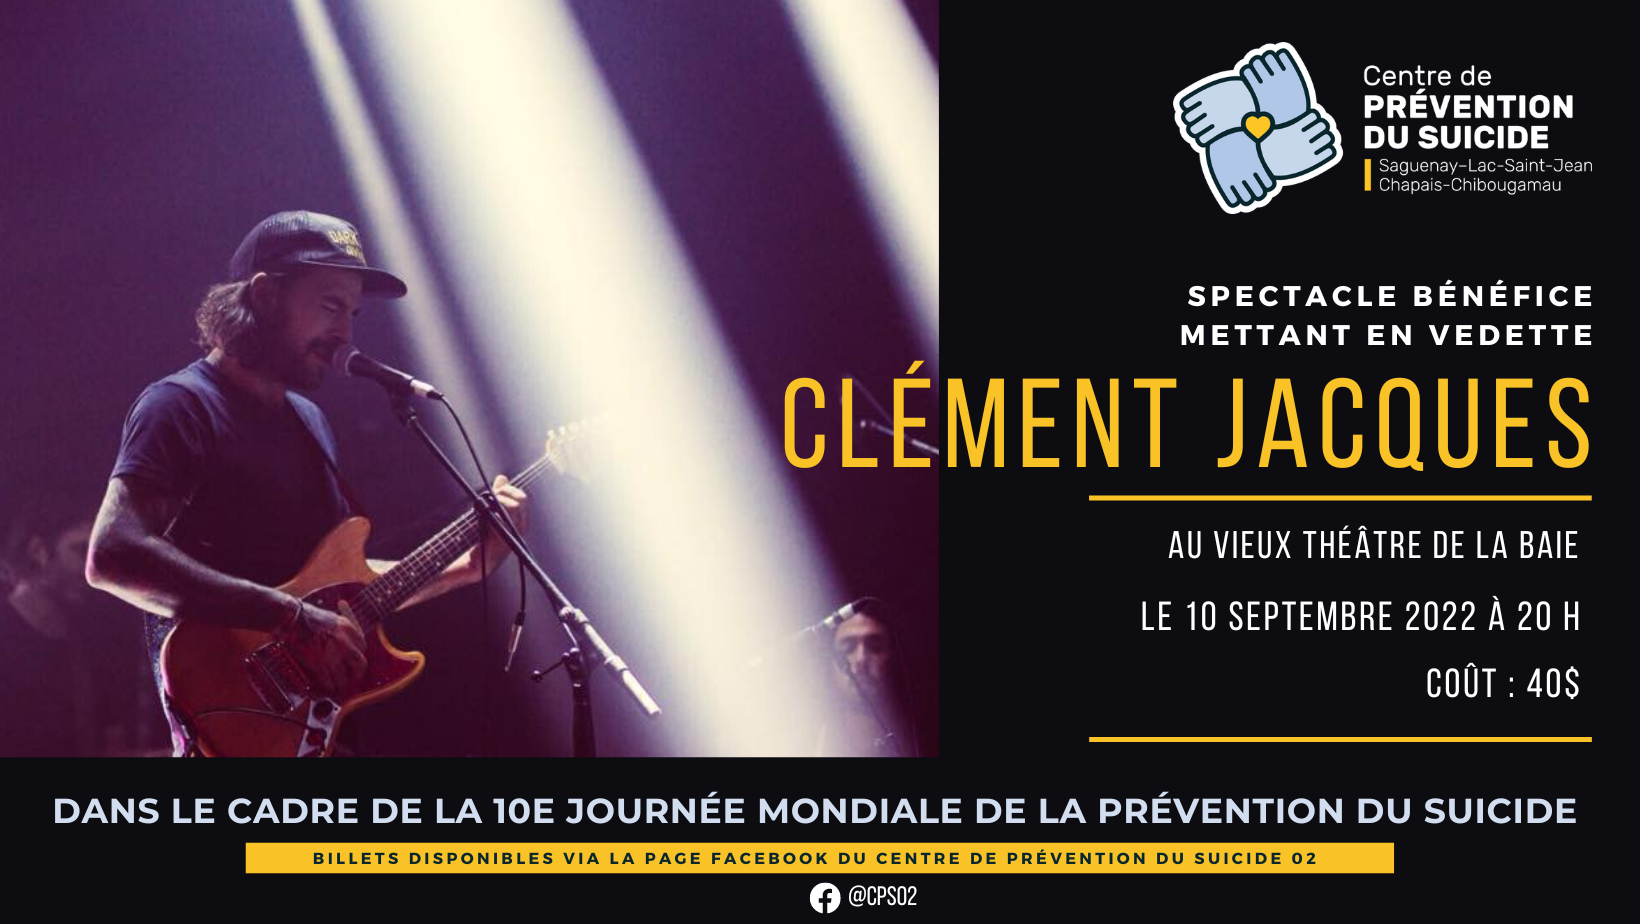 Spectacle bénéfice Clément Jacques - Centre de prévention du suicide 02